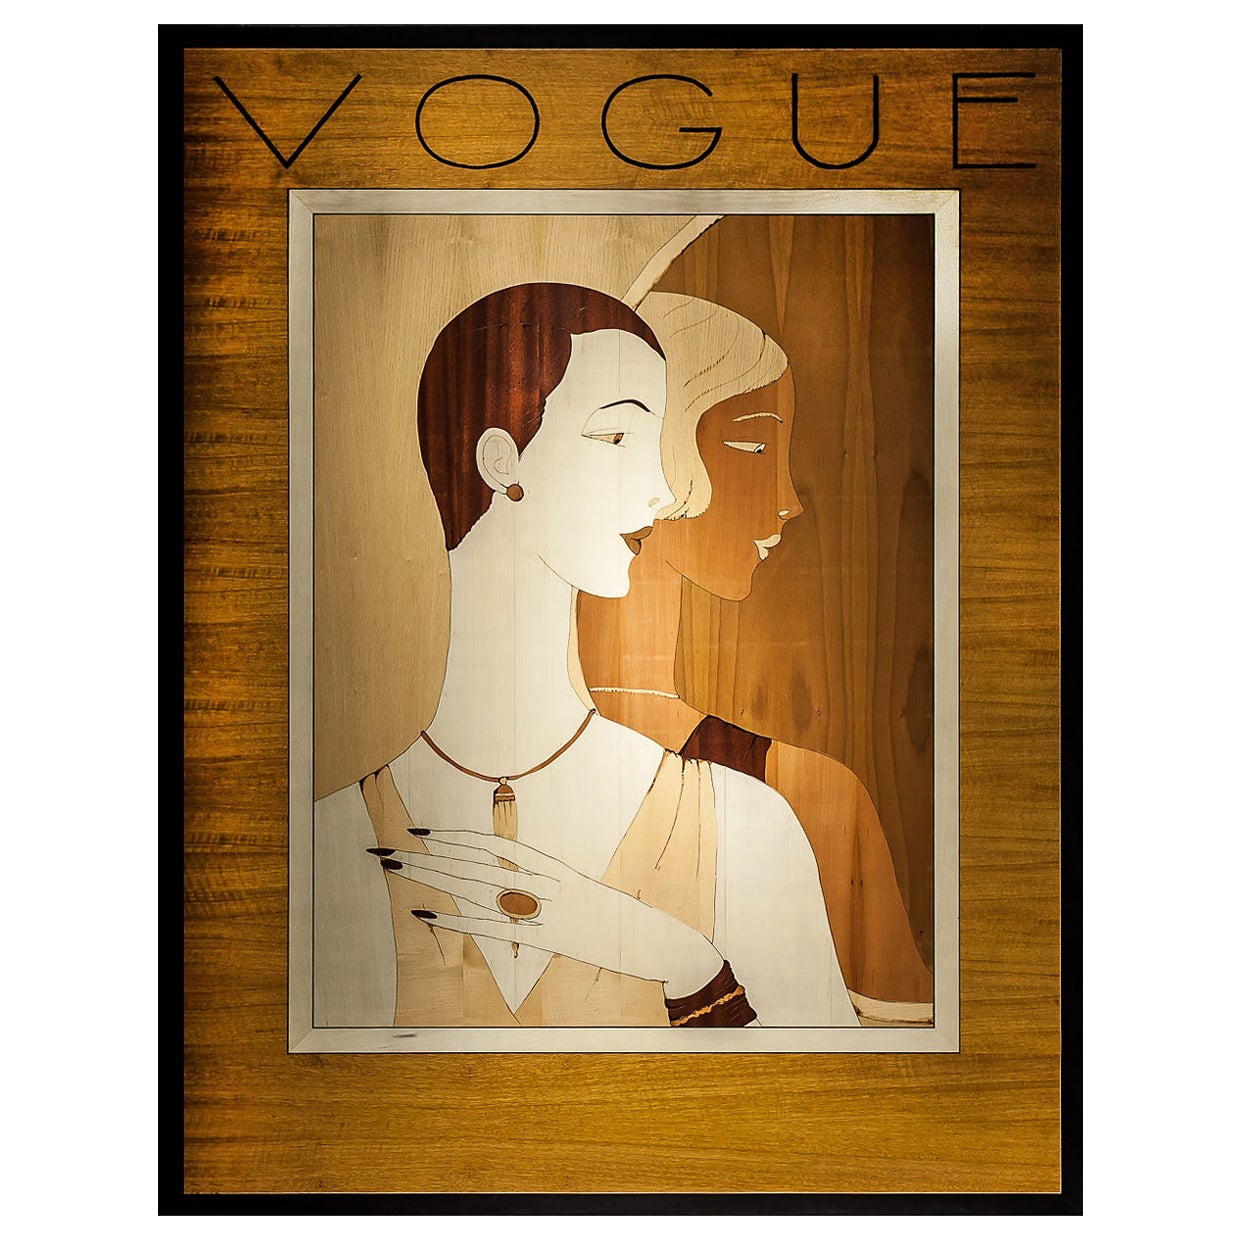 Cadre en bois et métal incrusté Vogue du 21e siècle, fabriqué en Italie par Hebanon